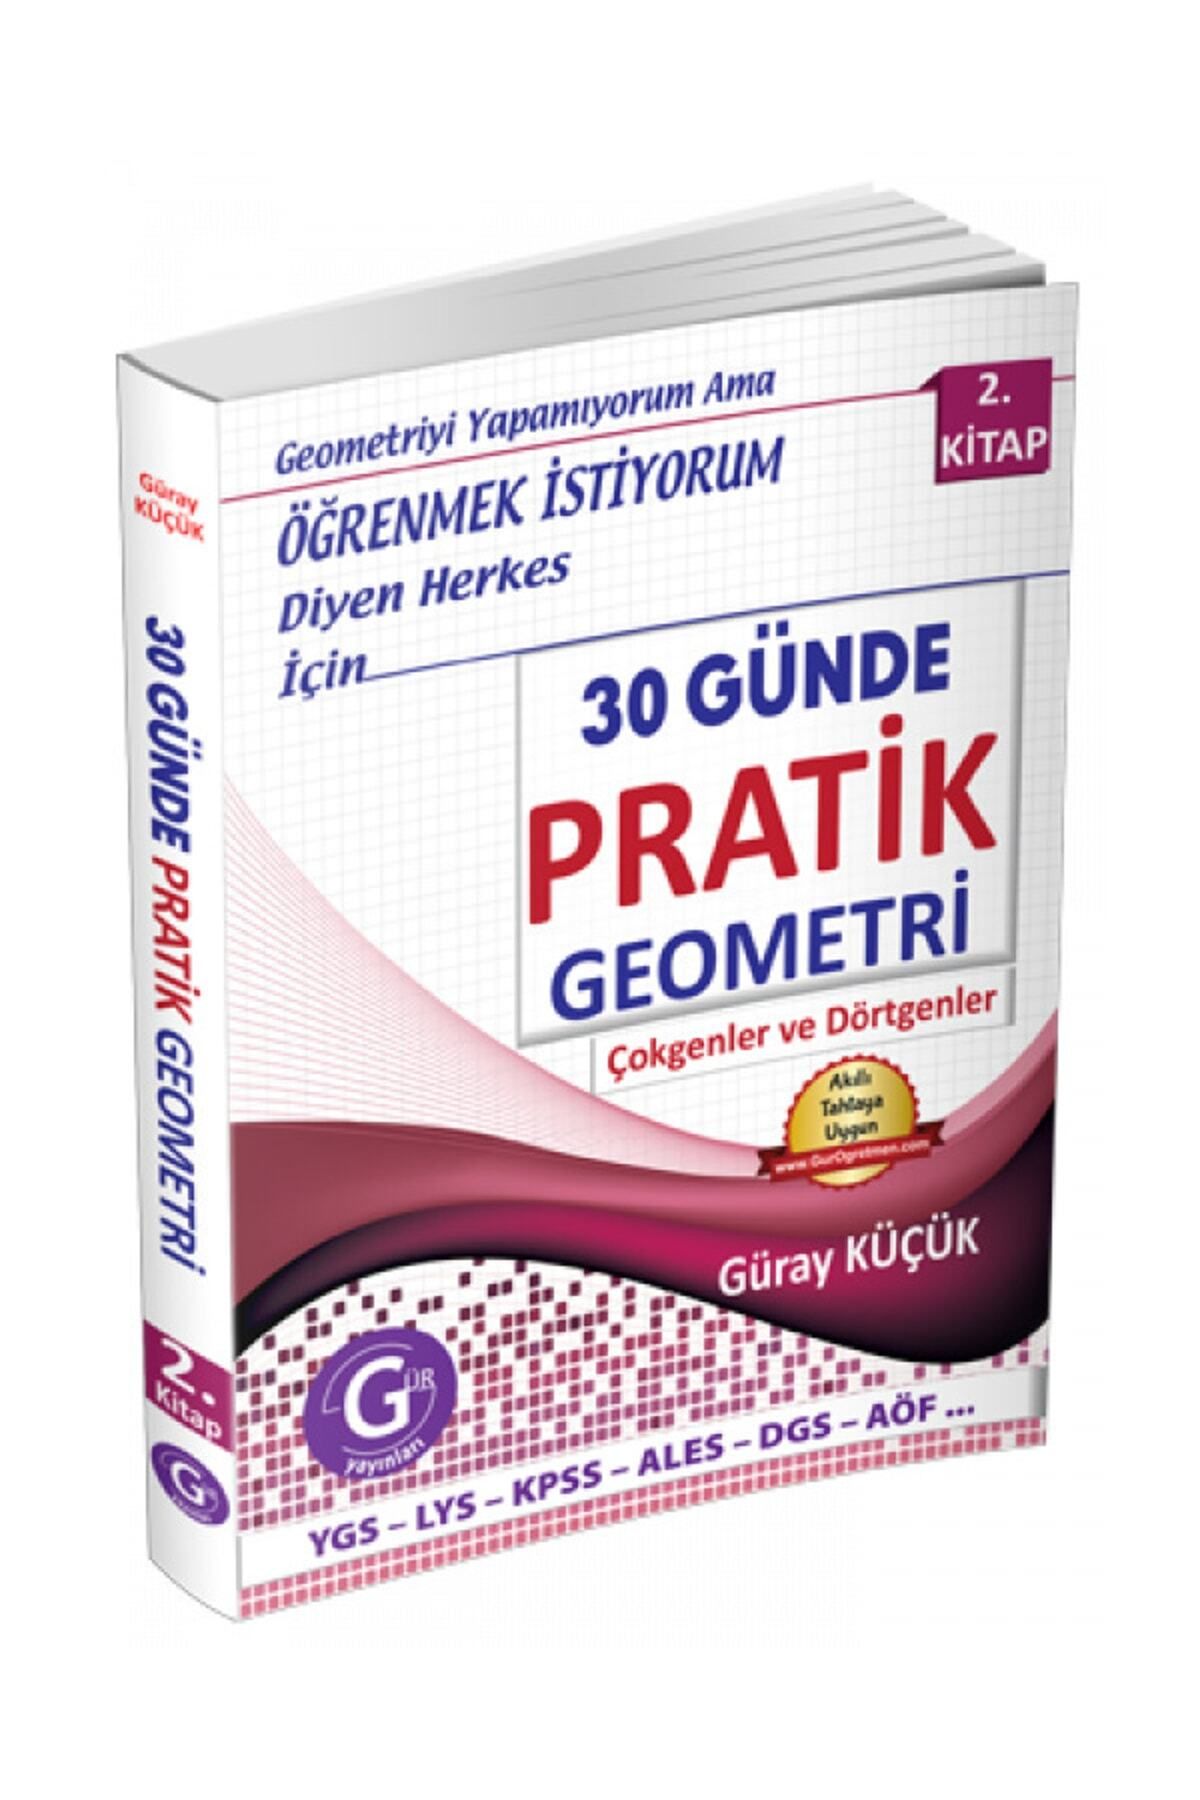 Gür Yayınları Güray Küçük Yayınları 30 Günde Pratik Geometri 2.kitap